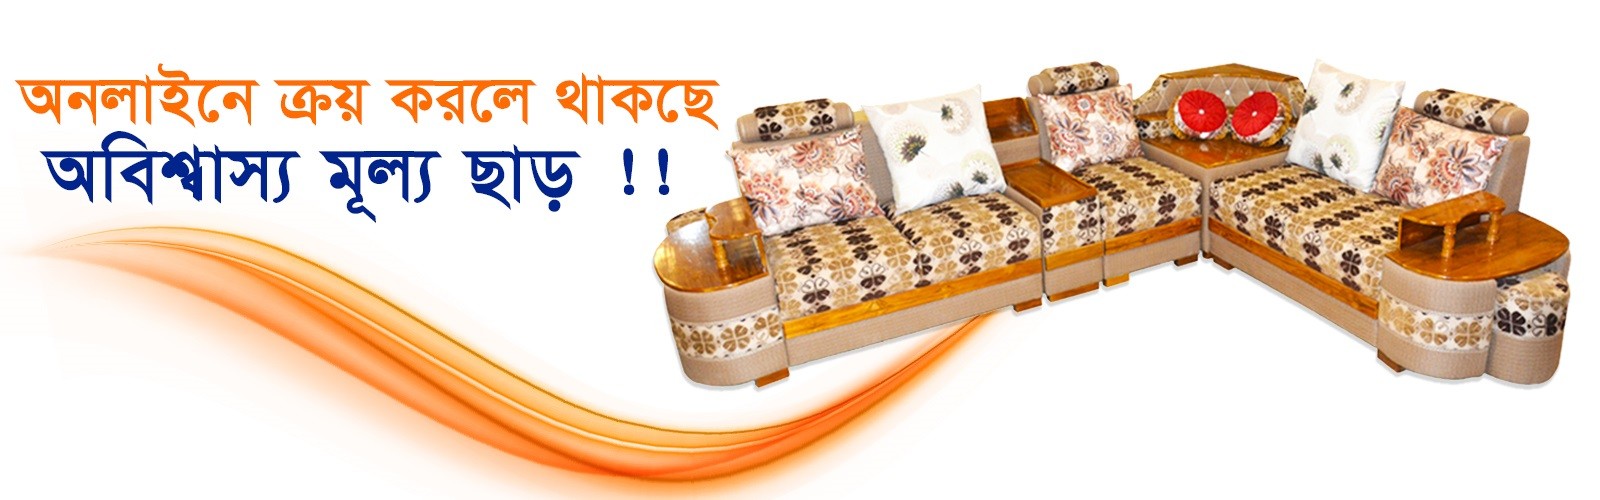 online furniture bd